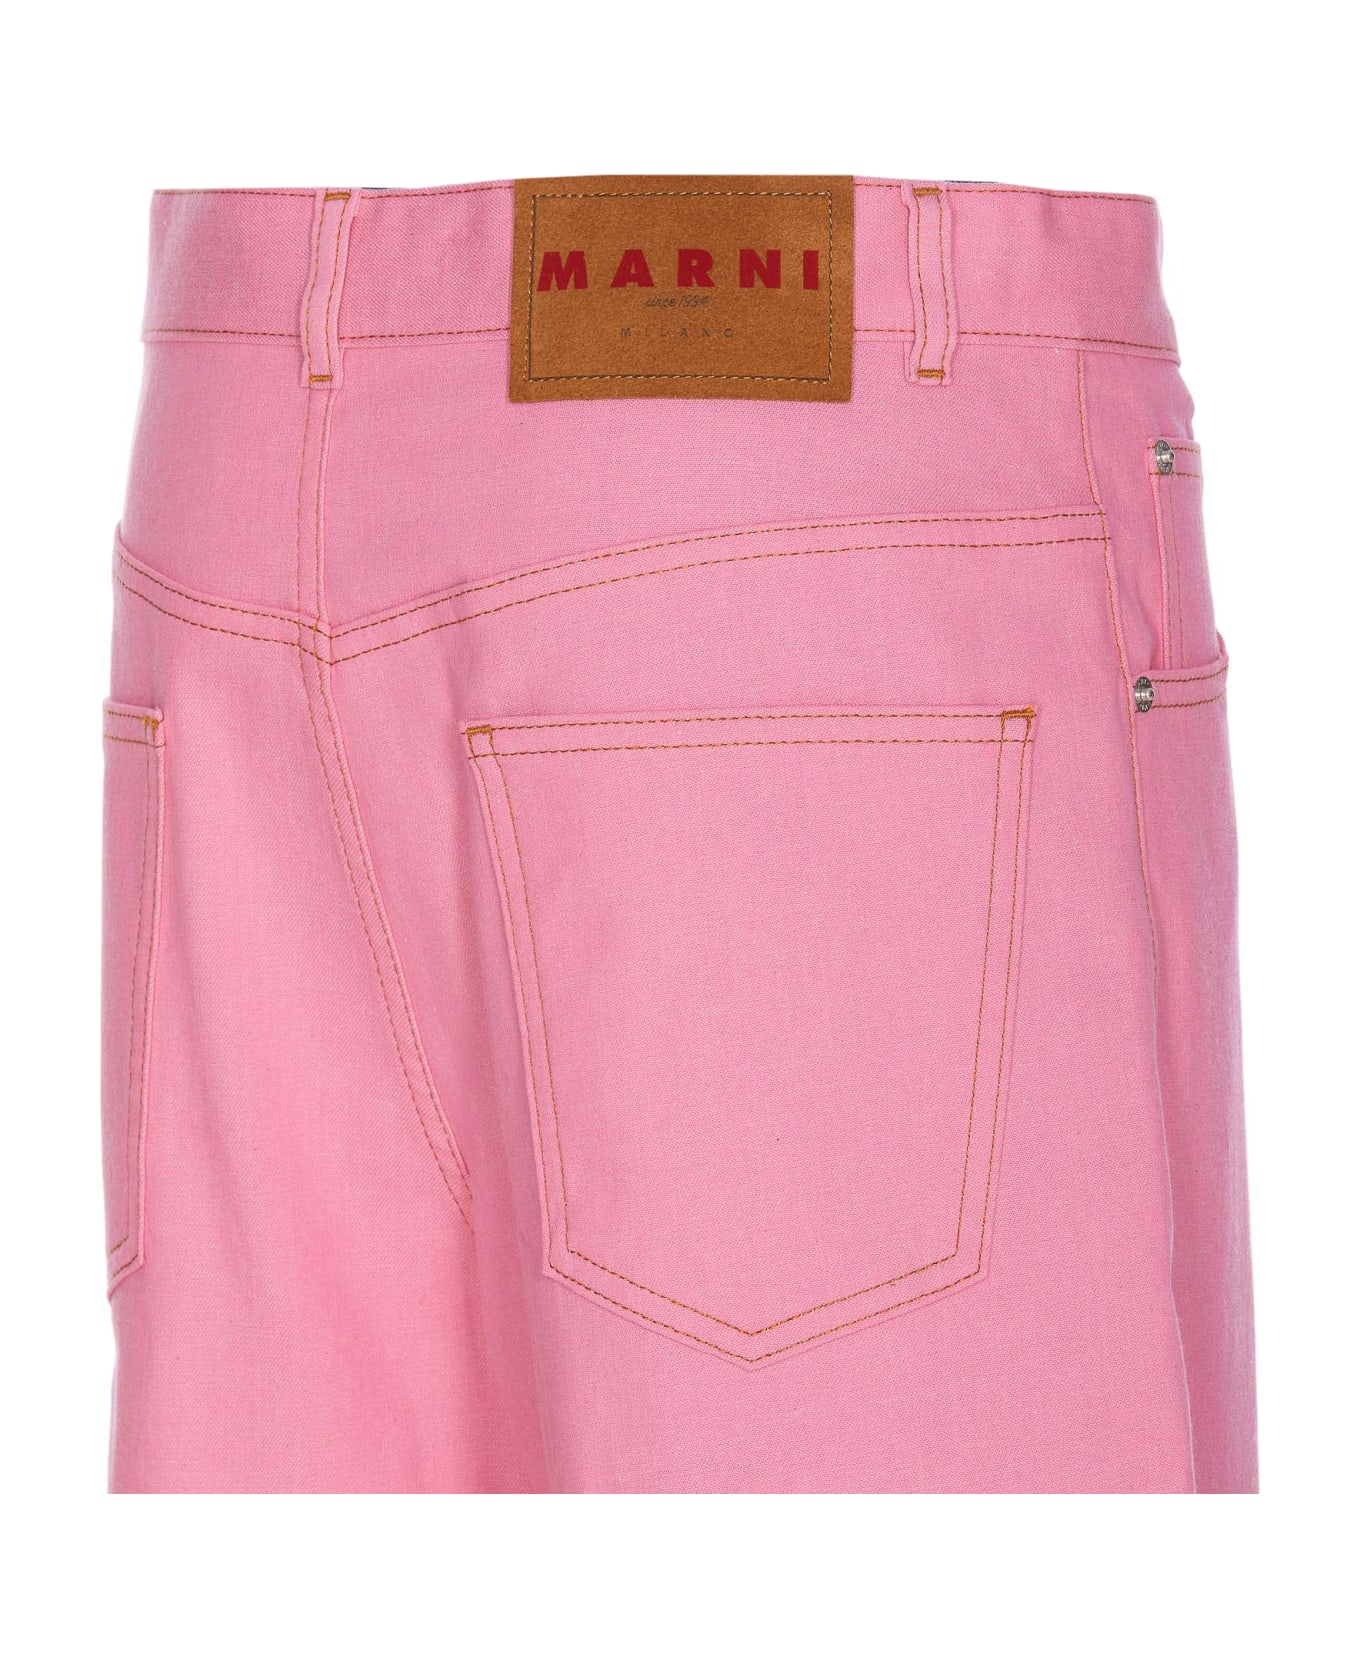 Marni Pants - Pink